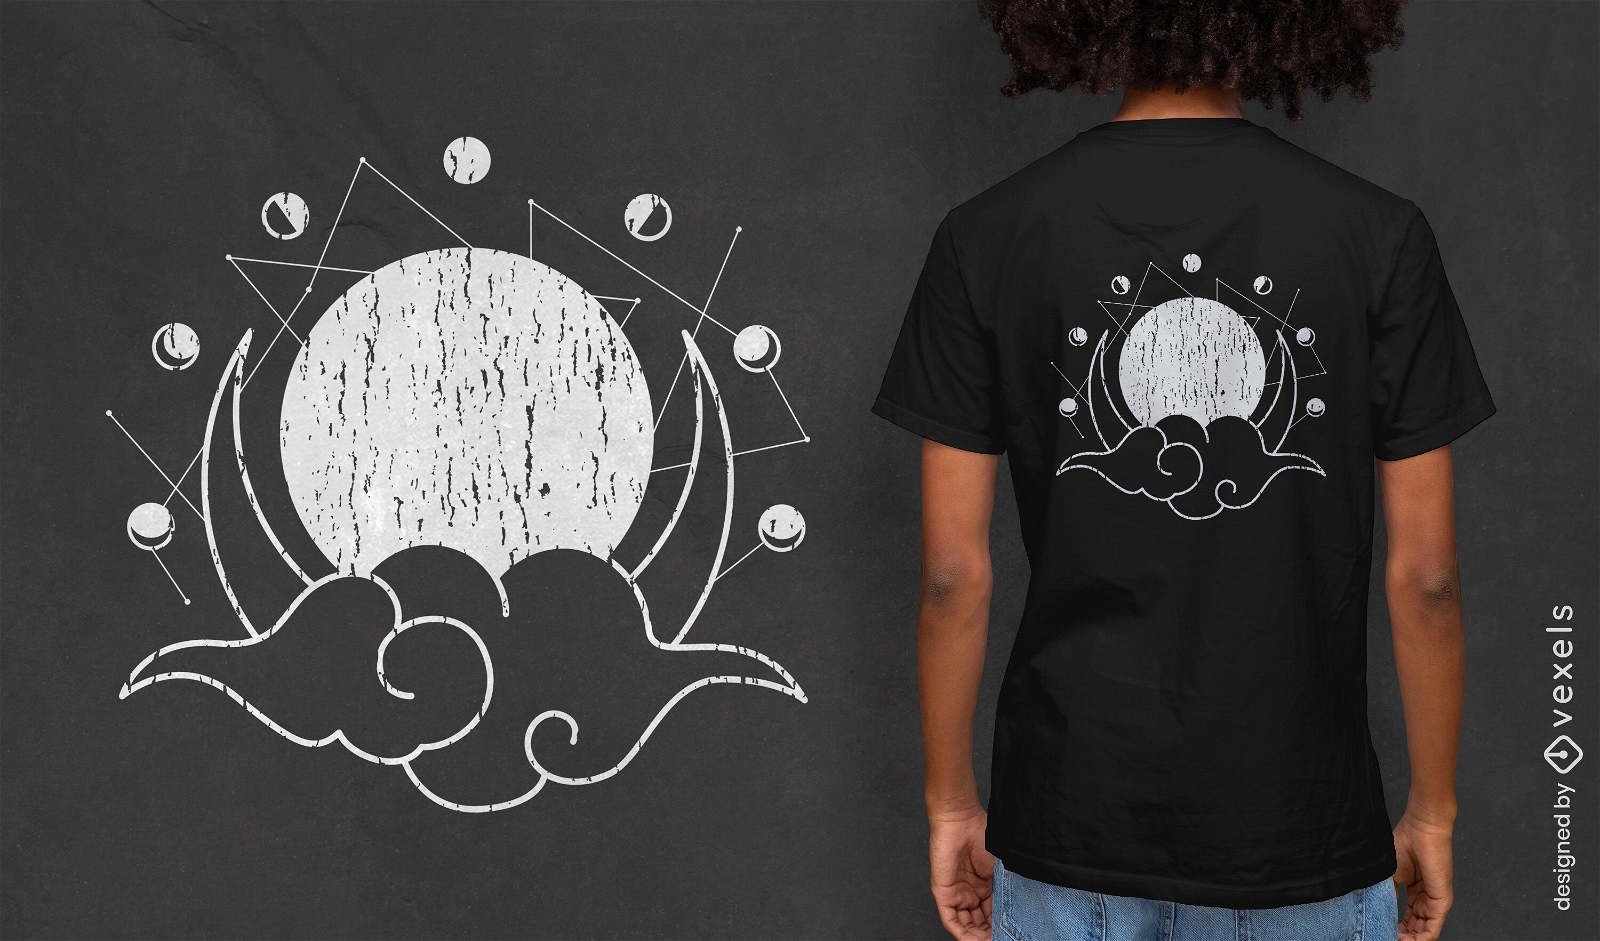 Dise?o de camiseta geom?trica de fases lunares.